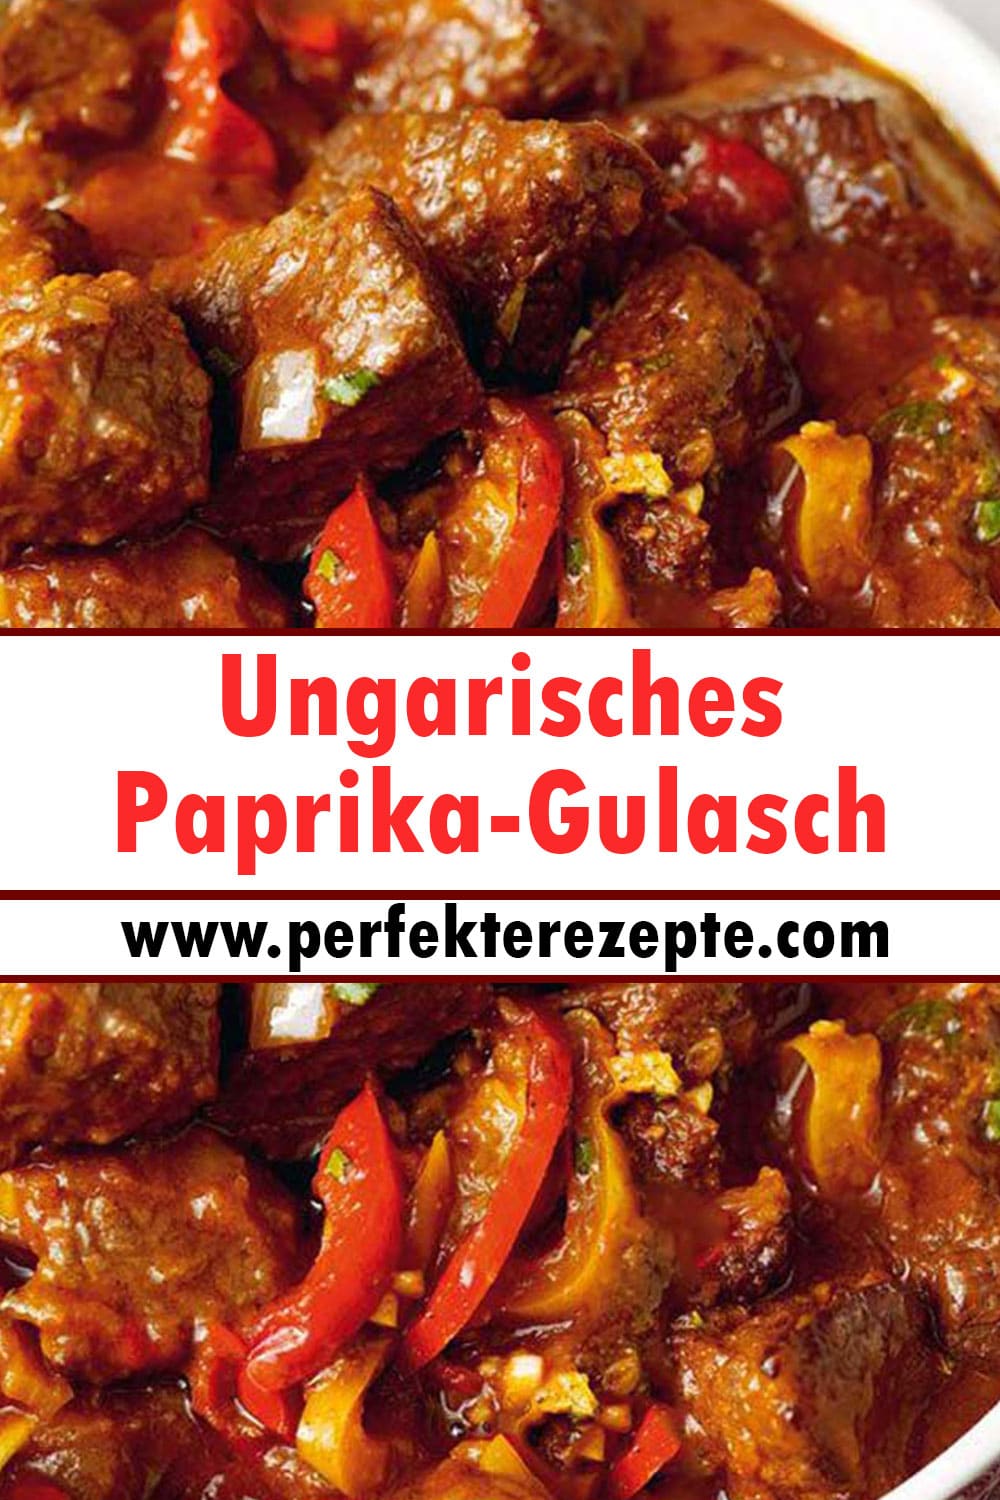 Klassicher Ungarisches Paprika-Gulasch Rezept